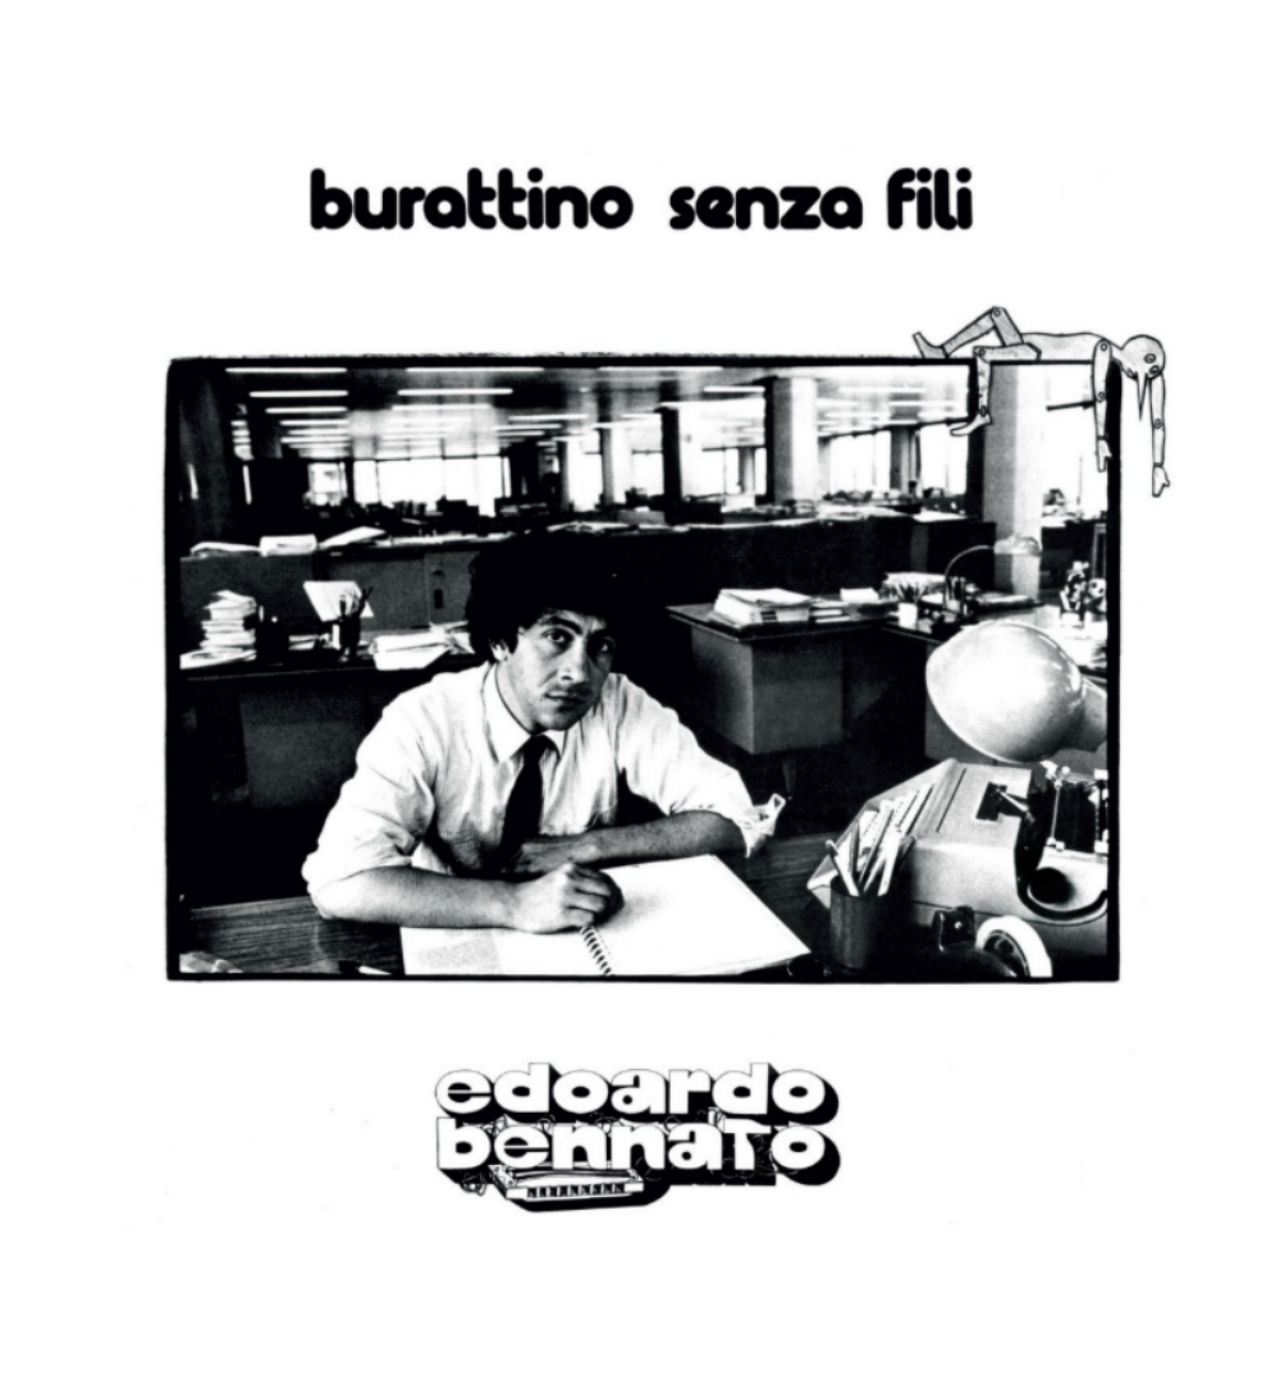  Pubblicata la “Legacy Edition” (Sony Music) di “Burattino senza fili”, il capolavoro di Edoardo Bennato